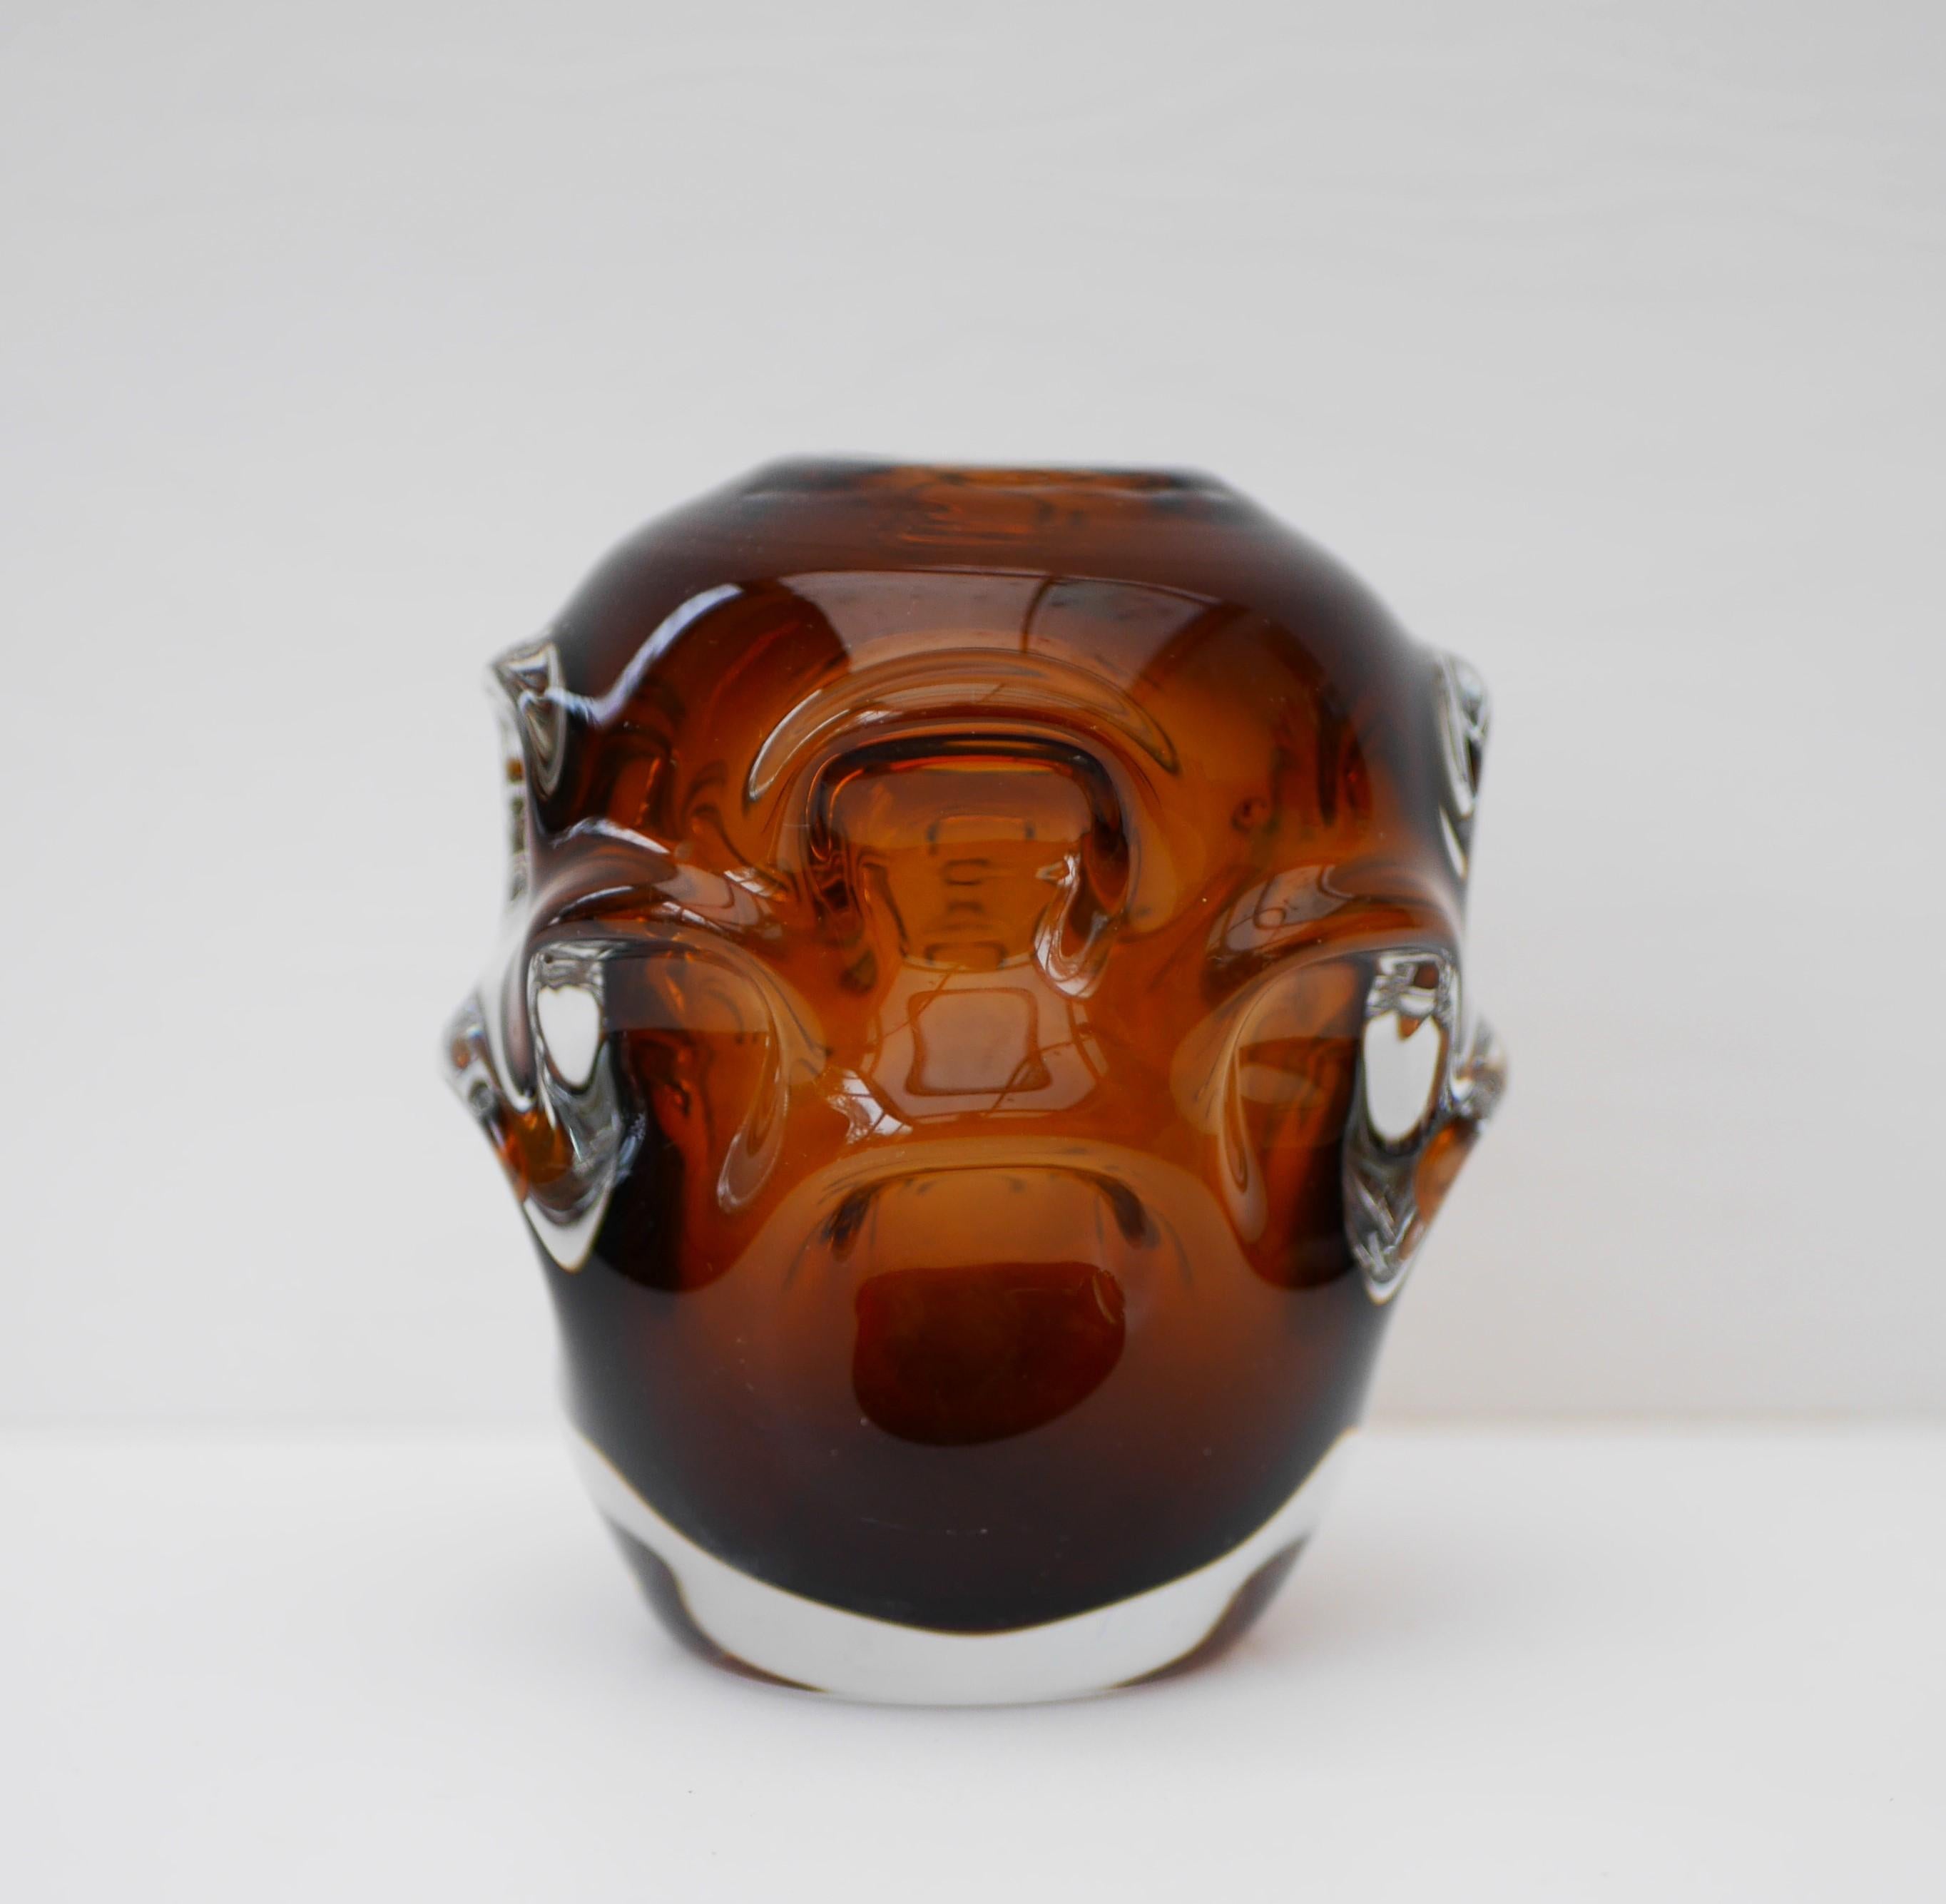 Eine atemberaubende Vase aus dunklem Braunglas von Börne Augustsson für die Glashütte Åseda, Schweden. Unsigniert aus den 1950er Jahren. Diese atemberaubende modernistische Glasvase ist ein echtes Statement.

Åseda wurde am 29. Juni 1946 gegründet